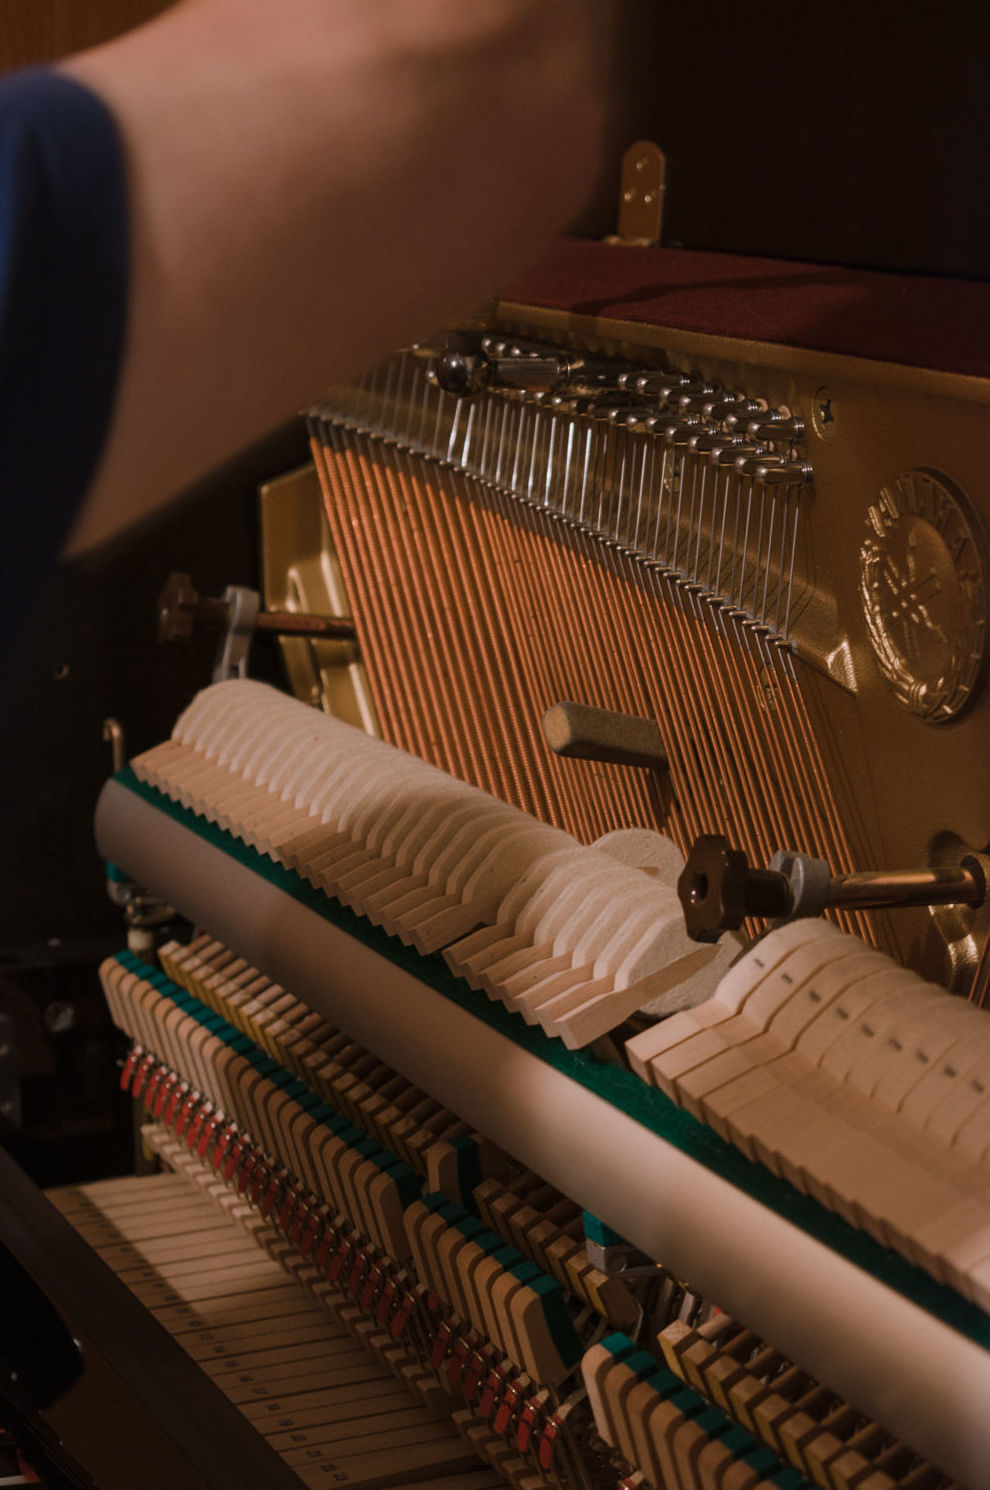 Foto 4 de Instruments de música en Terrassa | Afinador de Pianos E. Ferrer